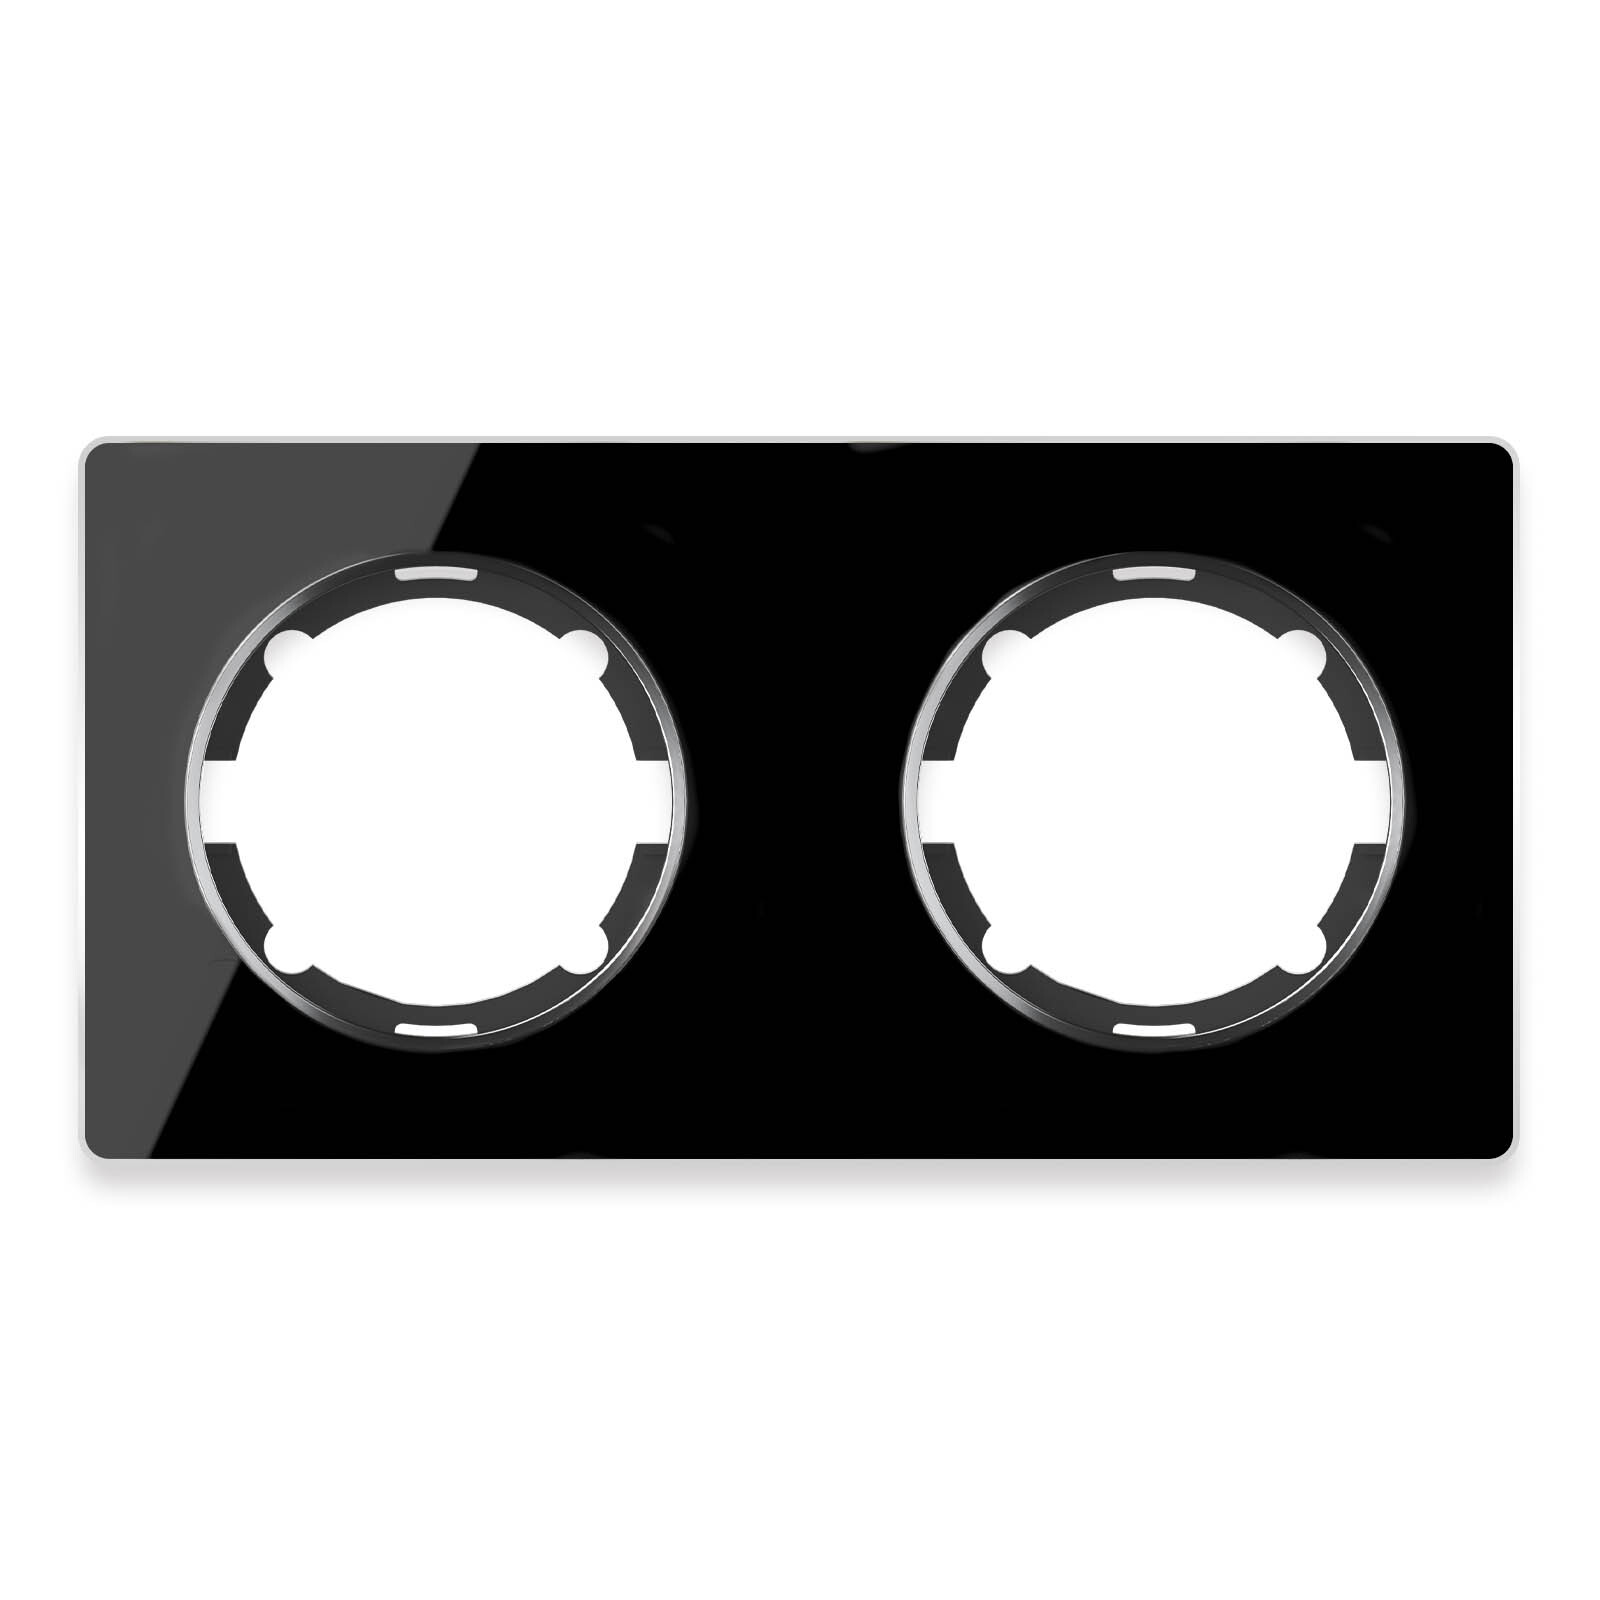 Рамка OneKeyElectro Garda (для серии Florence) 2 поста, горизонтальная, цвет чёрный двойная рамка retrika ретро американский орех на бревно rd 02224